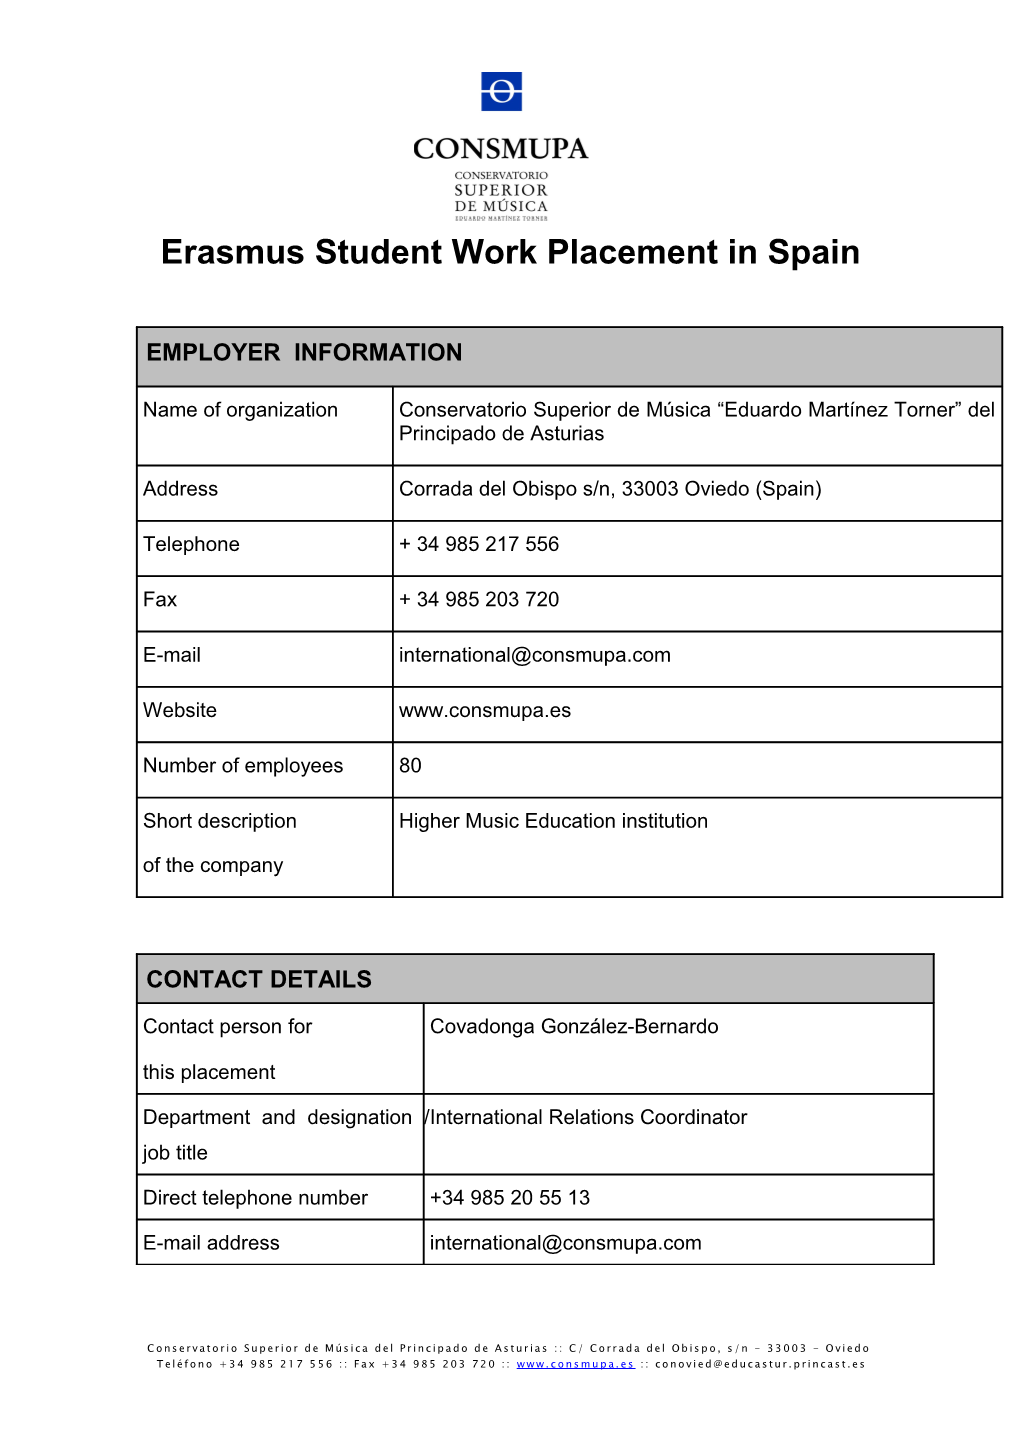 Erasmus Student Work Placement in Spain